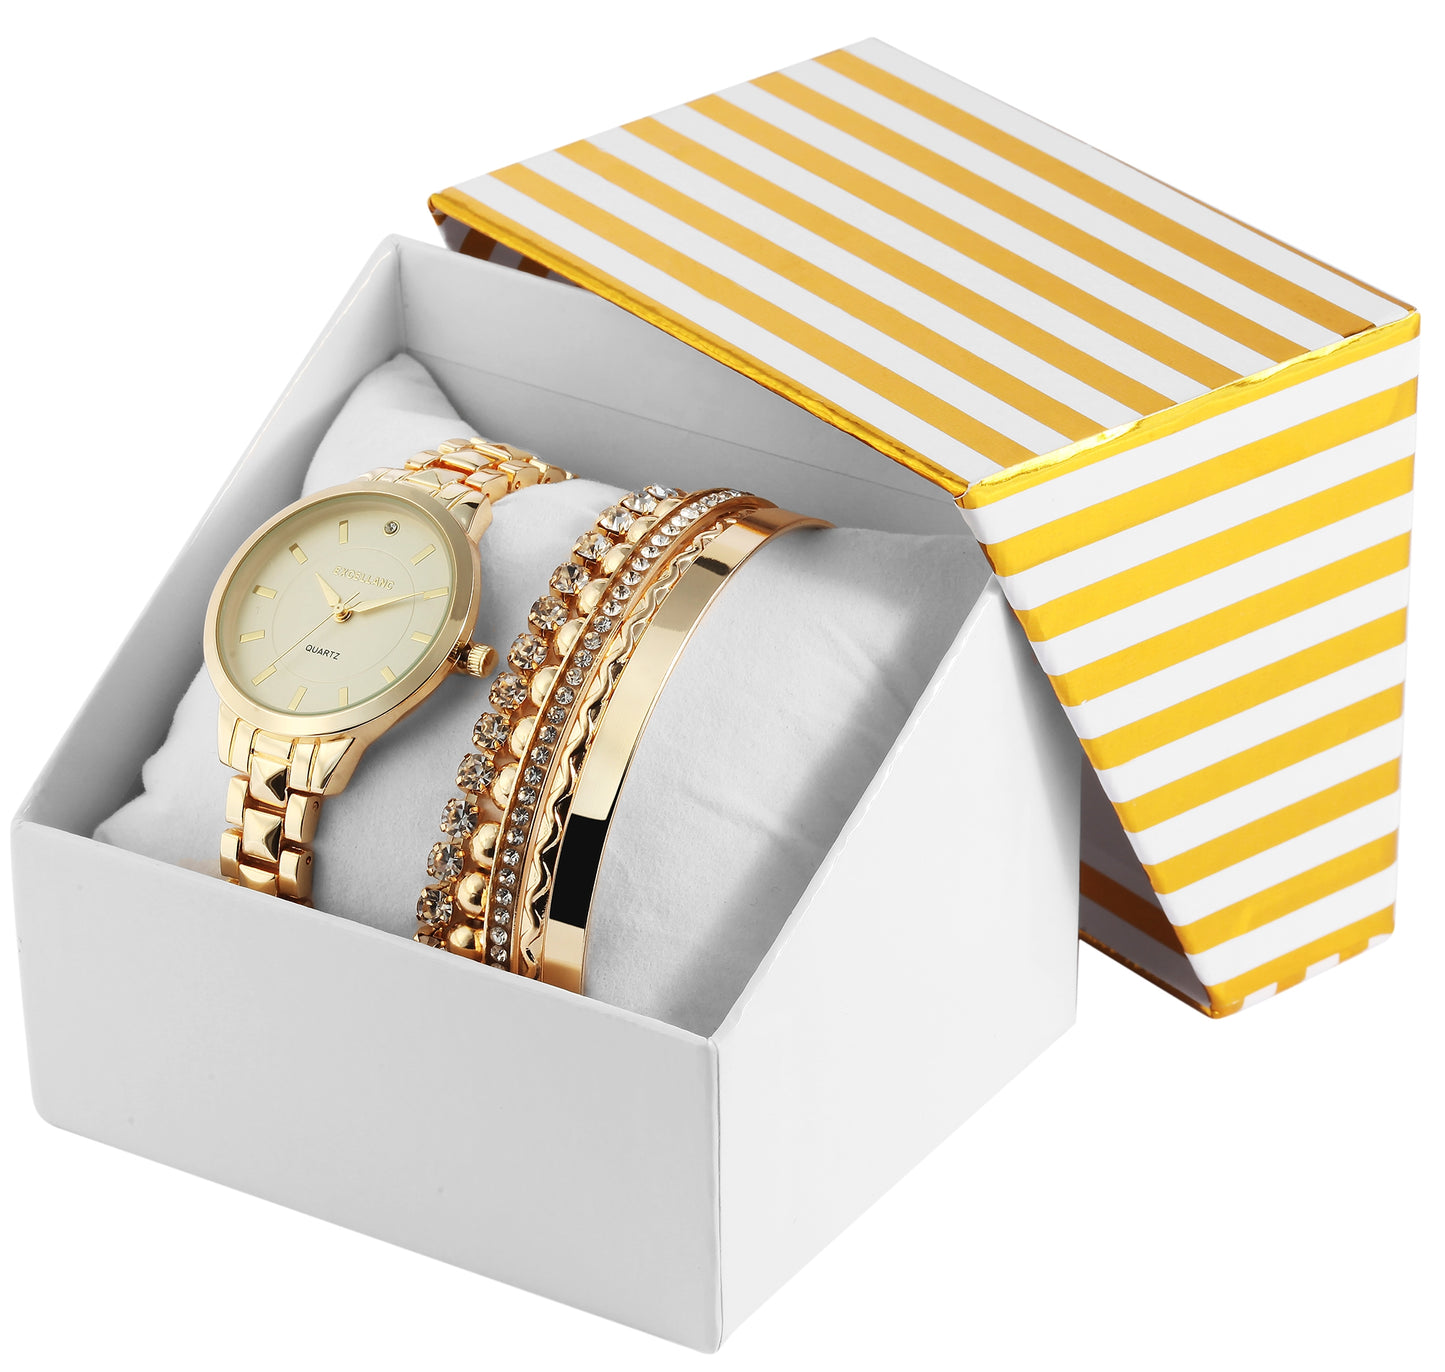 Zestaw prezentowy zegarka Excellanc: zegarek damski + 2 bransolety, złoty odcień EX0423, złoty kolor, wysokiej jakości mechanizm kwarcowy, żółty kolor tarczy